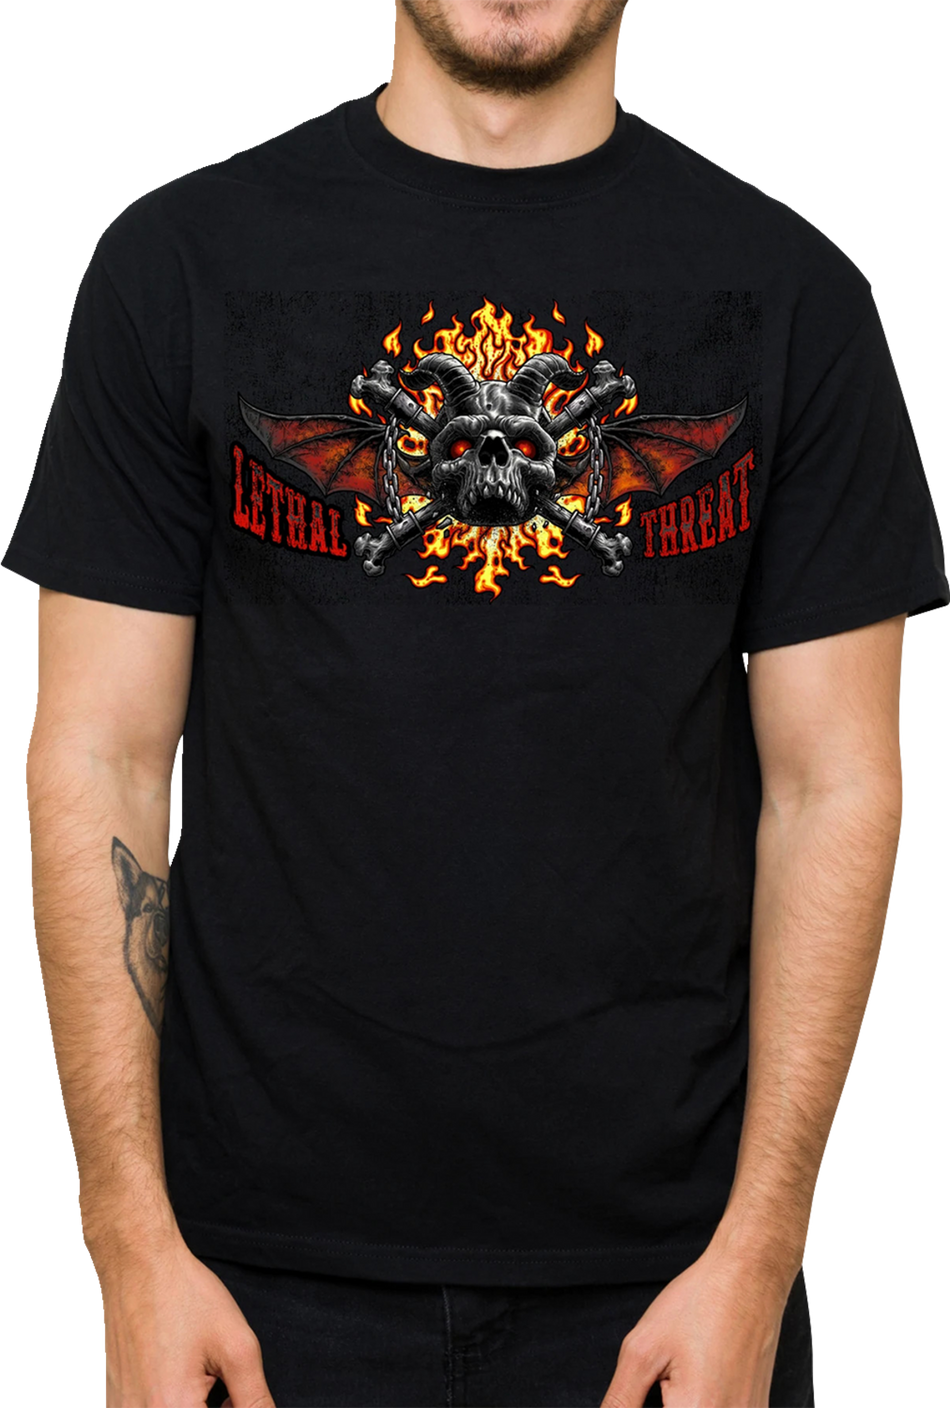 LETHAL THREAT Hell Was Full T-Shirt - Black - XL LT20901XL